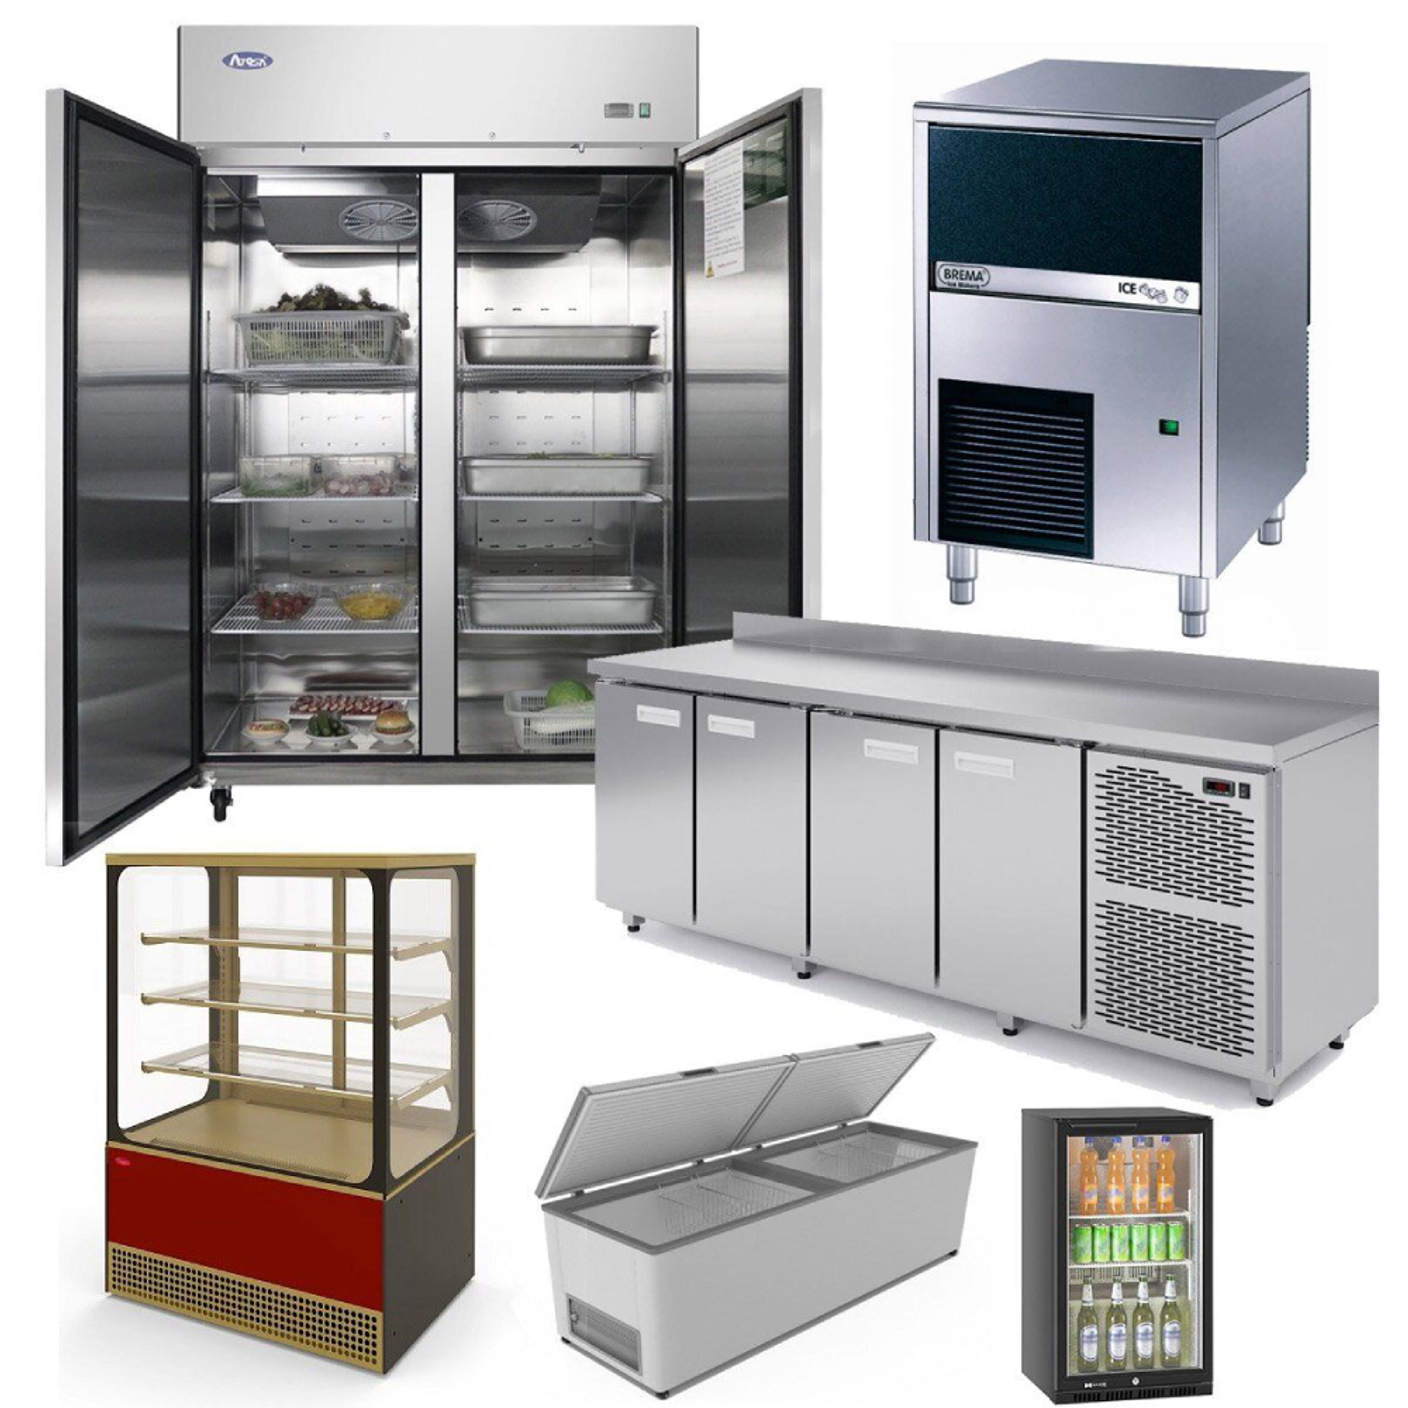 Руководство по эксплуатации бытовых двухкамерных холодильников МИР